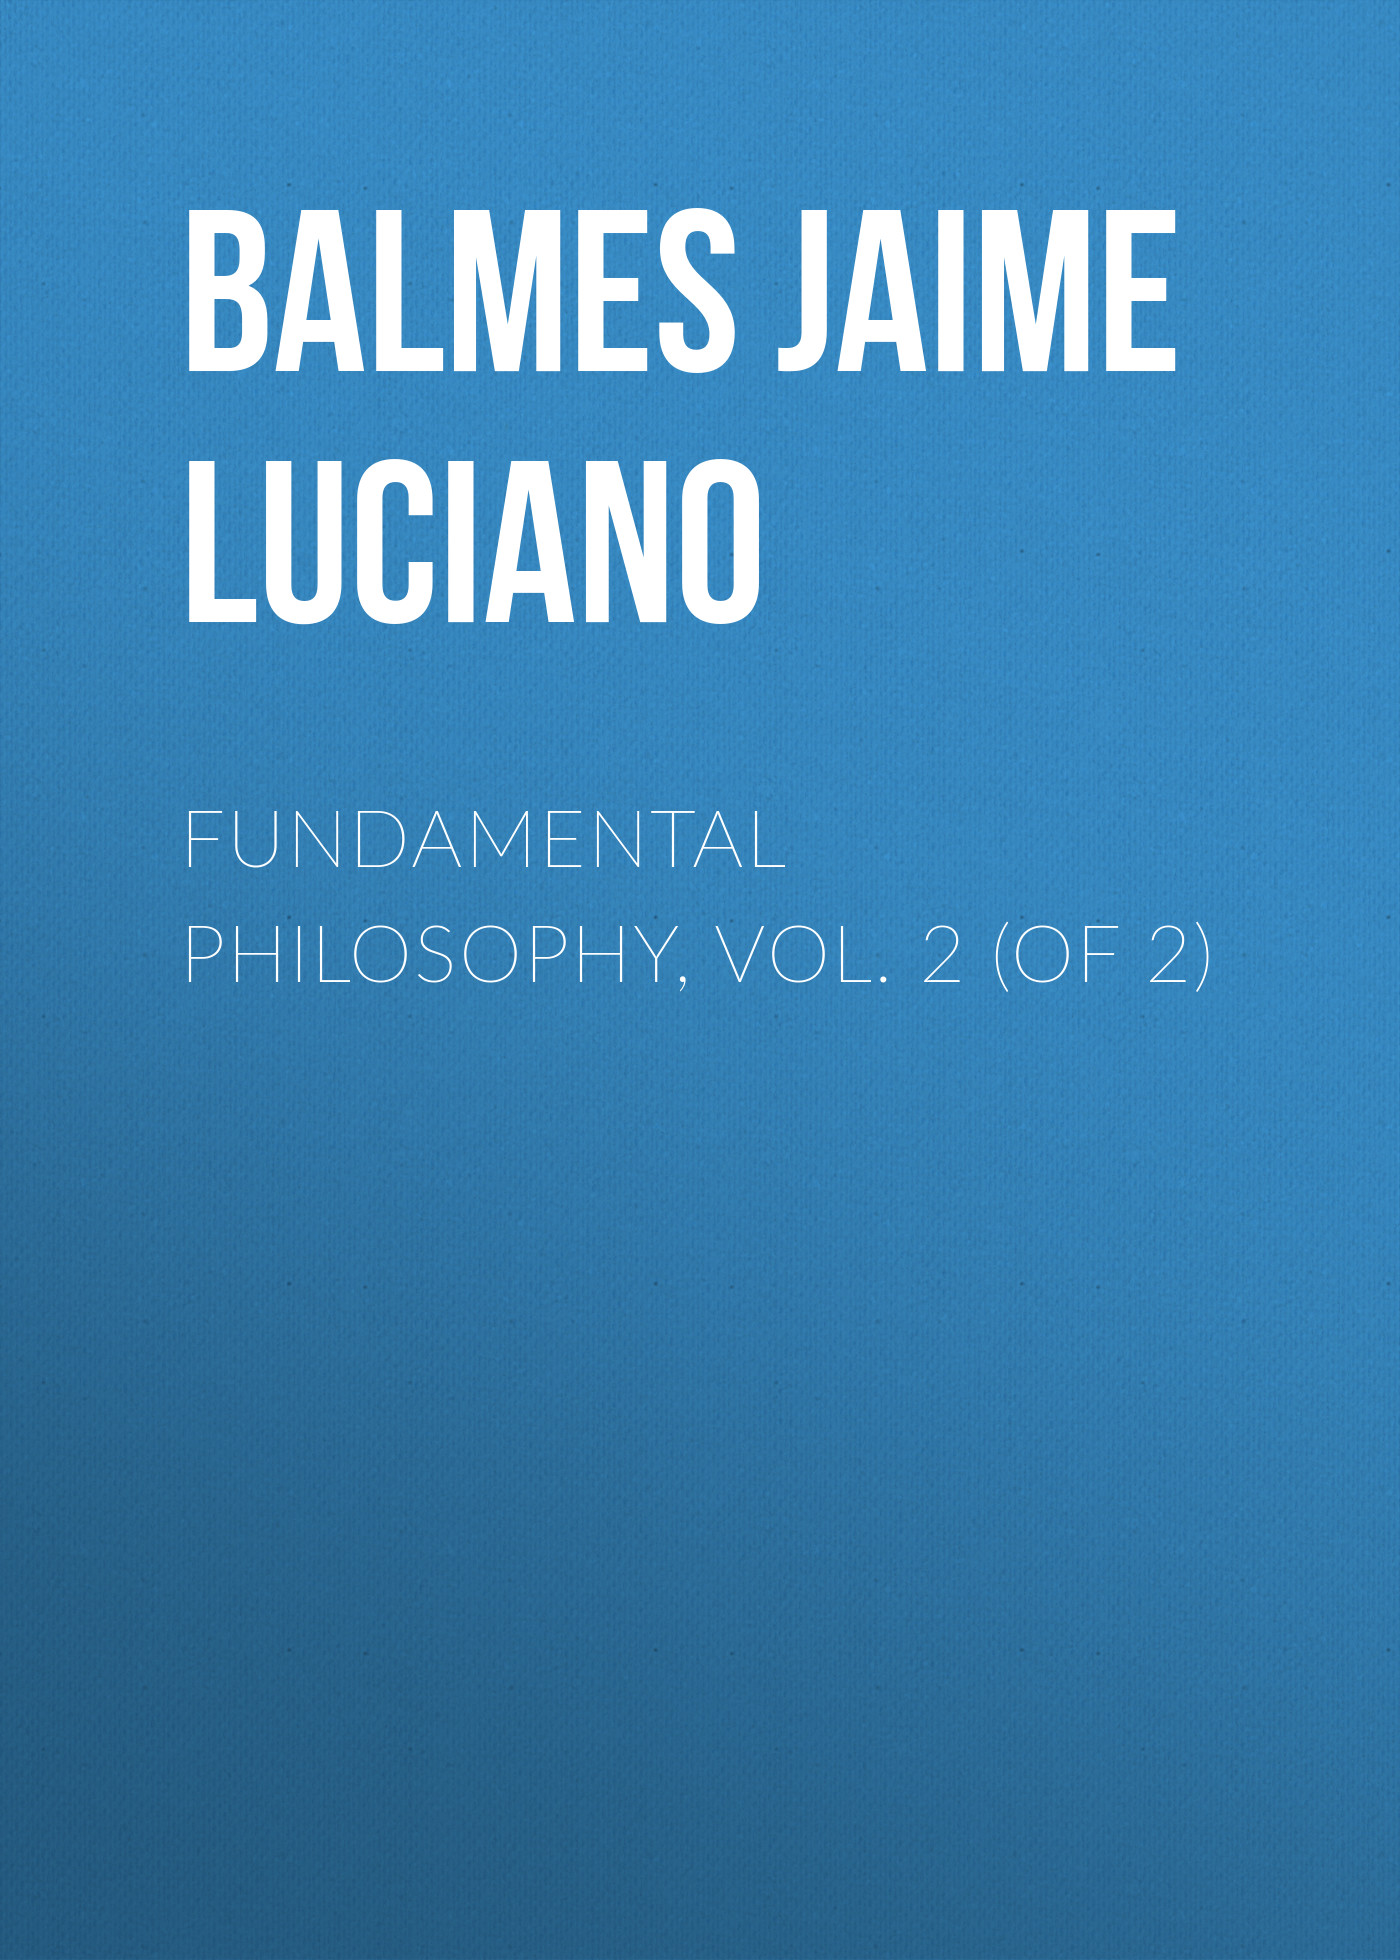 Книга Fundamental Philosophy, Vol. 2 (of 2) из серии , созданная Jaime Balmes, может относится к жанру Зарубежная старинная литература, Зарубежная классика. Стоимость электронной книги Fundamental Philosophy, Vol. 2 (of 2) с идентификатором 24167708 составляет 0 руб.